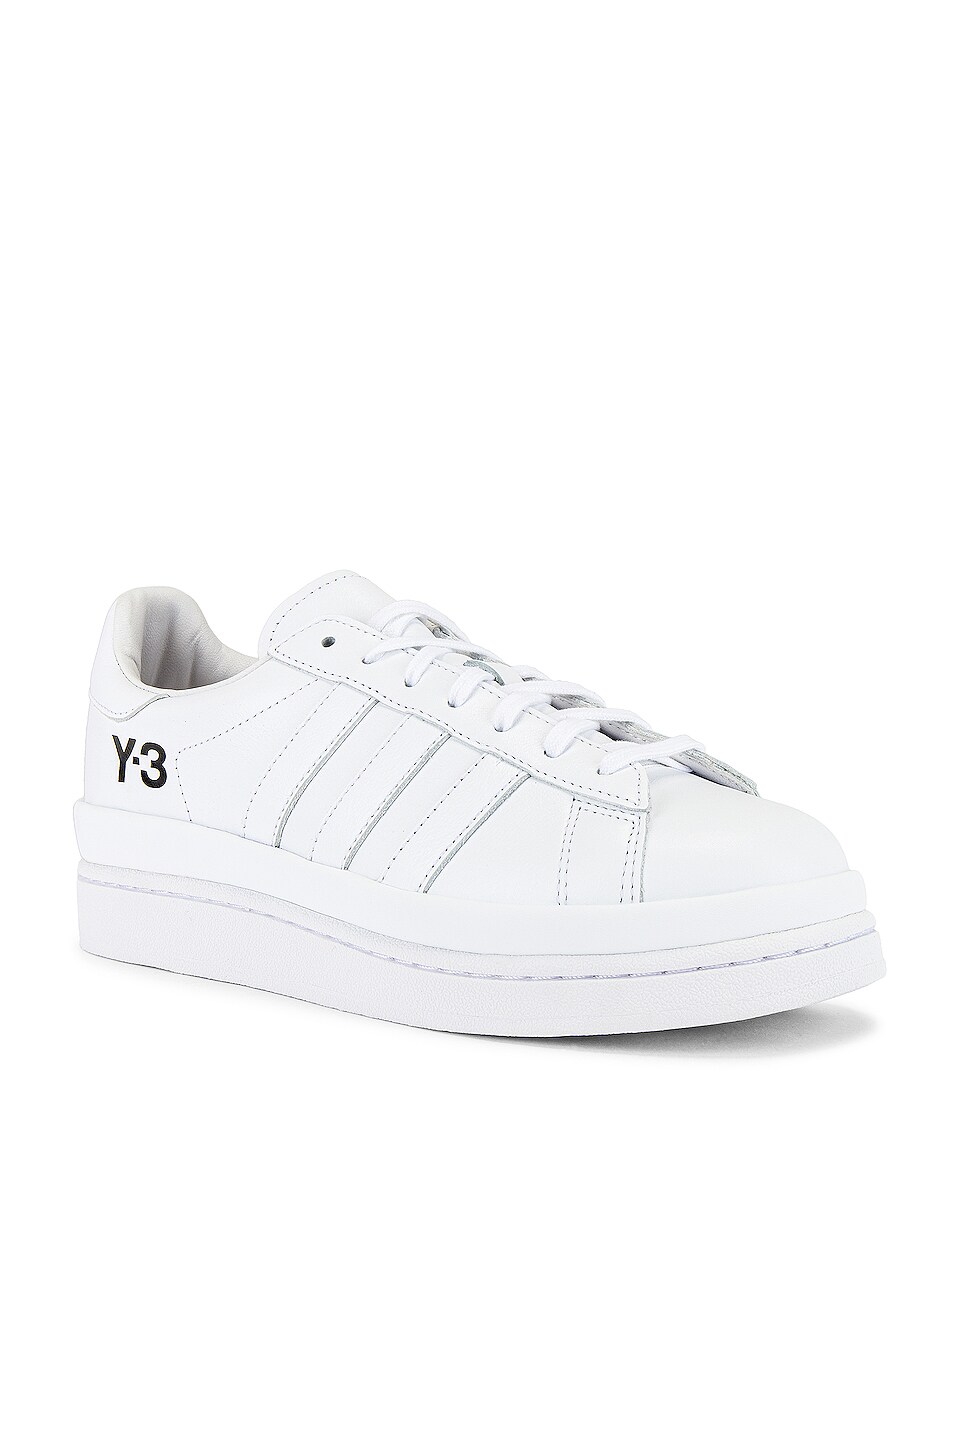 y3 white